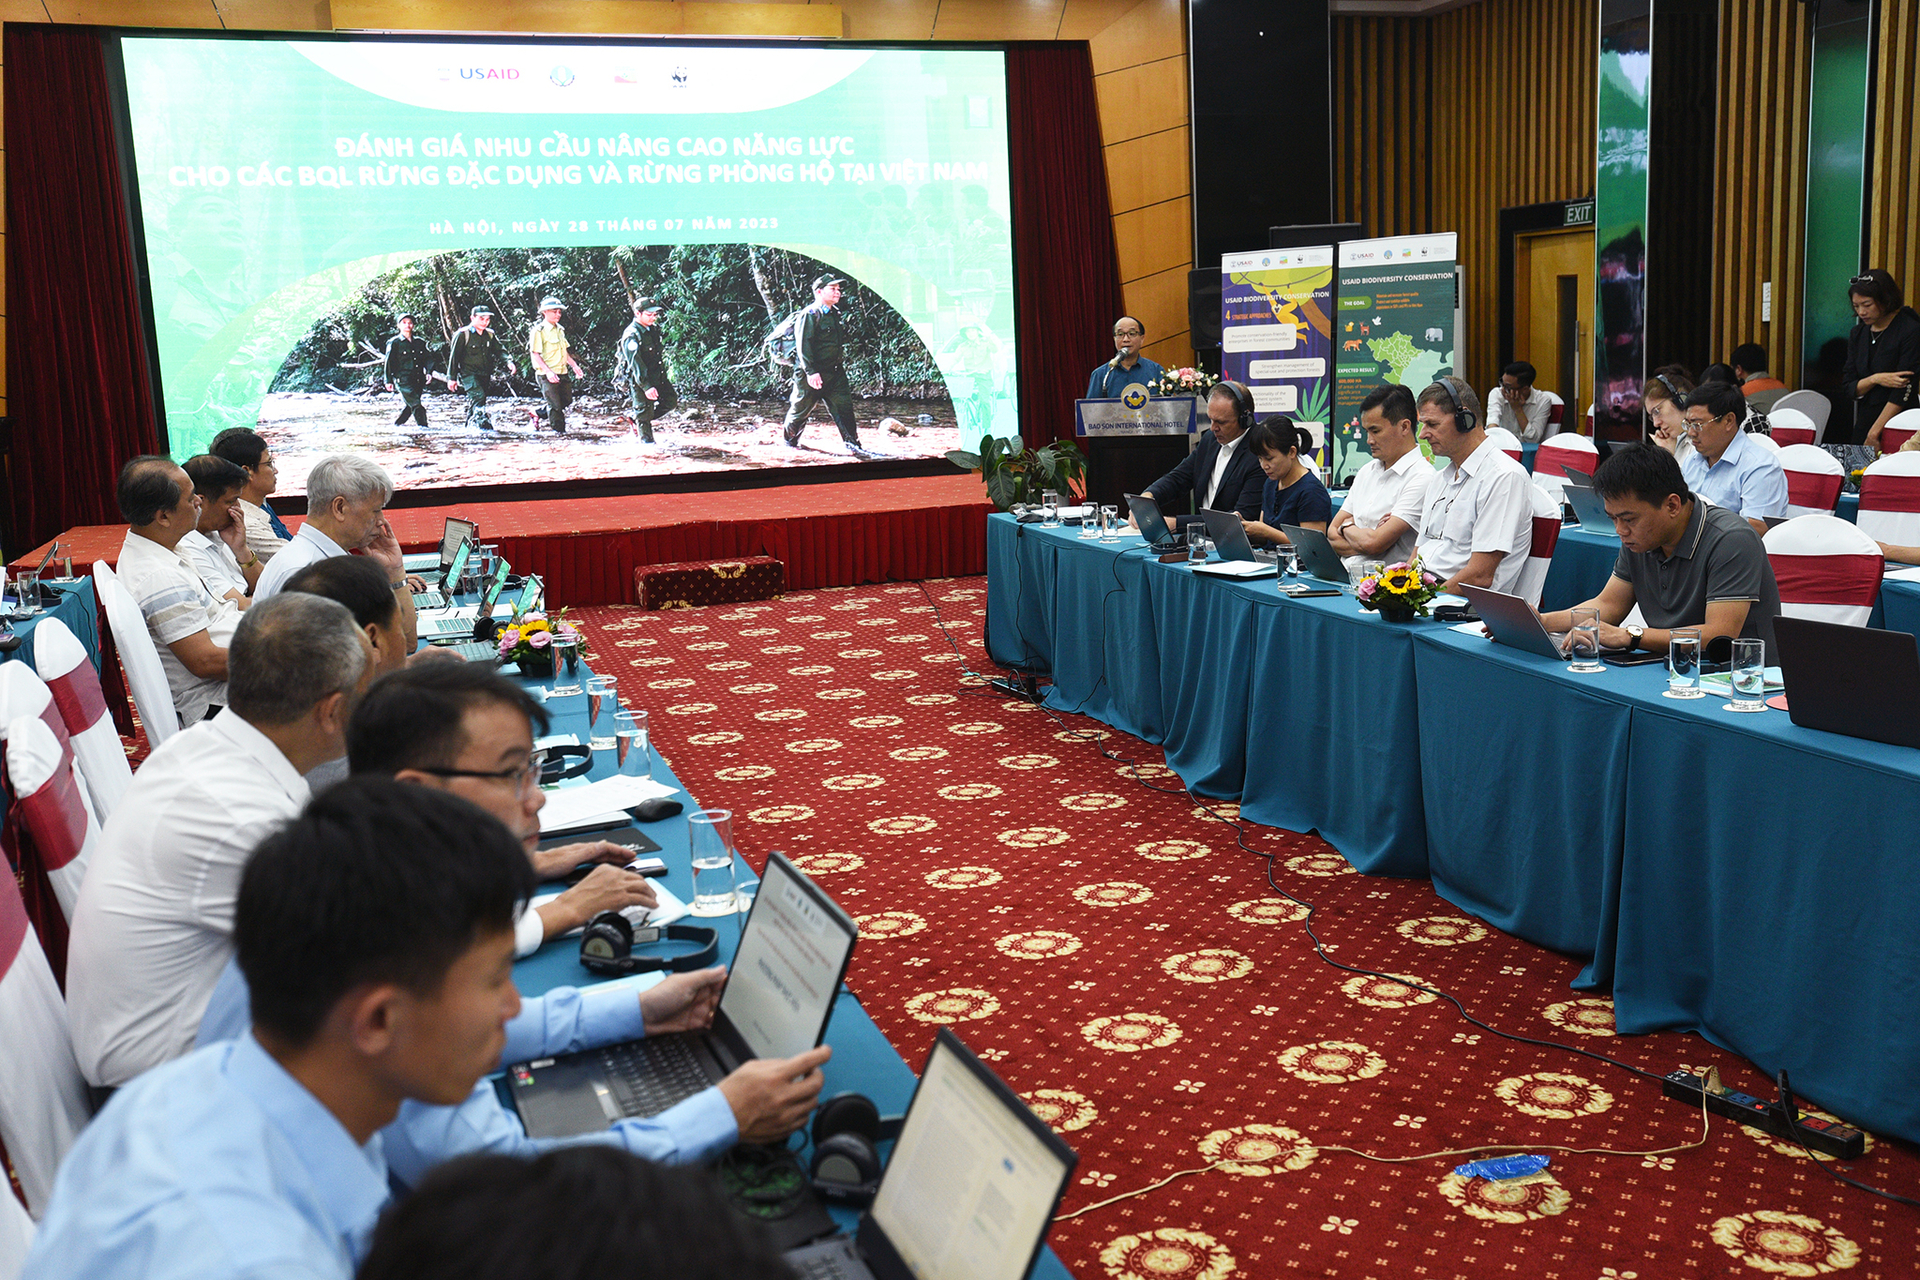 Hội thảo đánh giá nhu cầu nâng cao năng lực quản lý cho các khu rừng đặc dụng và rừng phòng hộ ở Việt Nam sáng 28/7. Ảnh: Tùng Đinh.